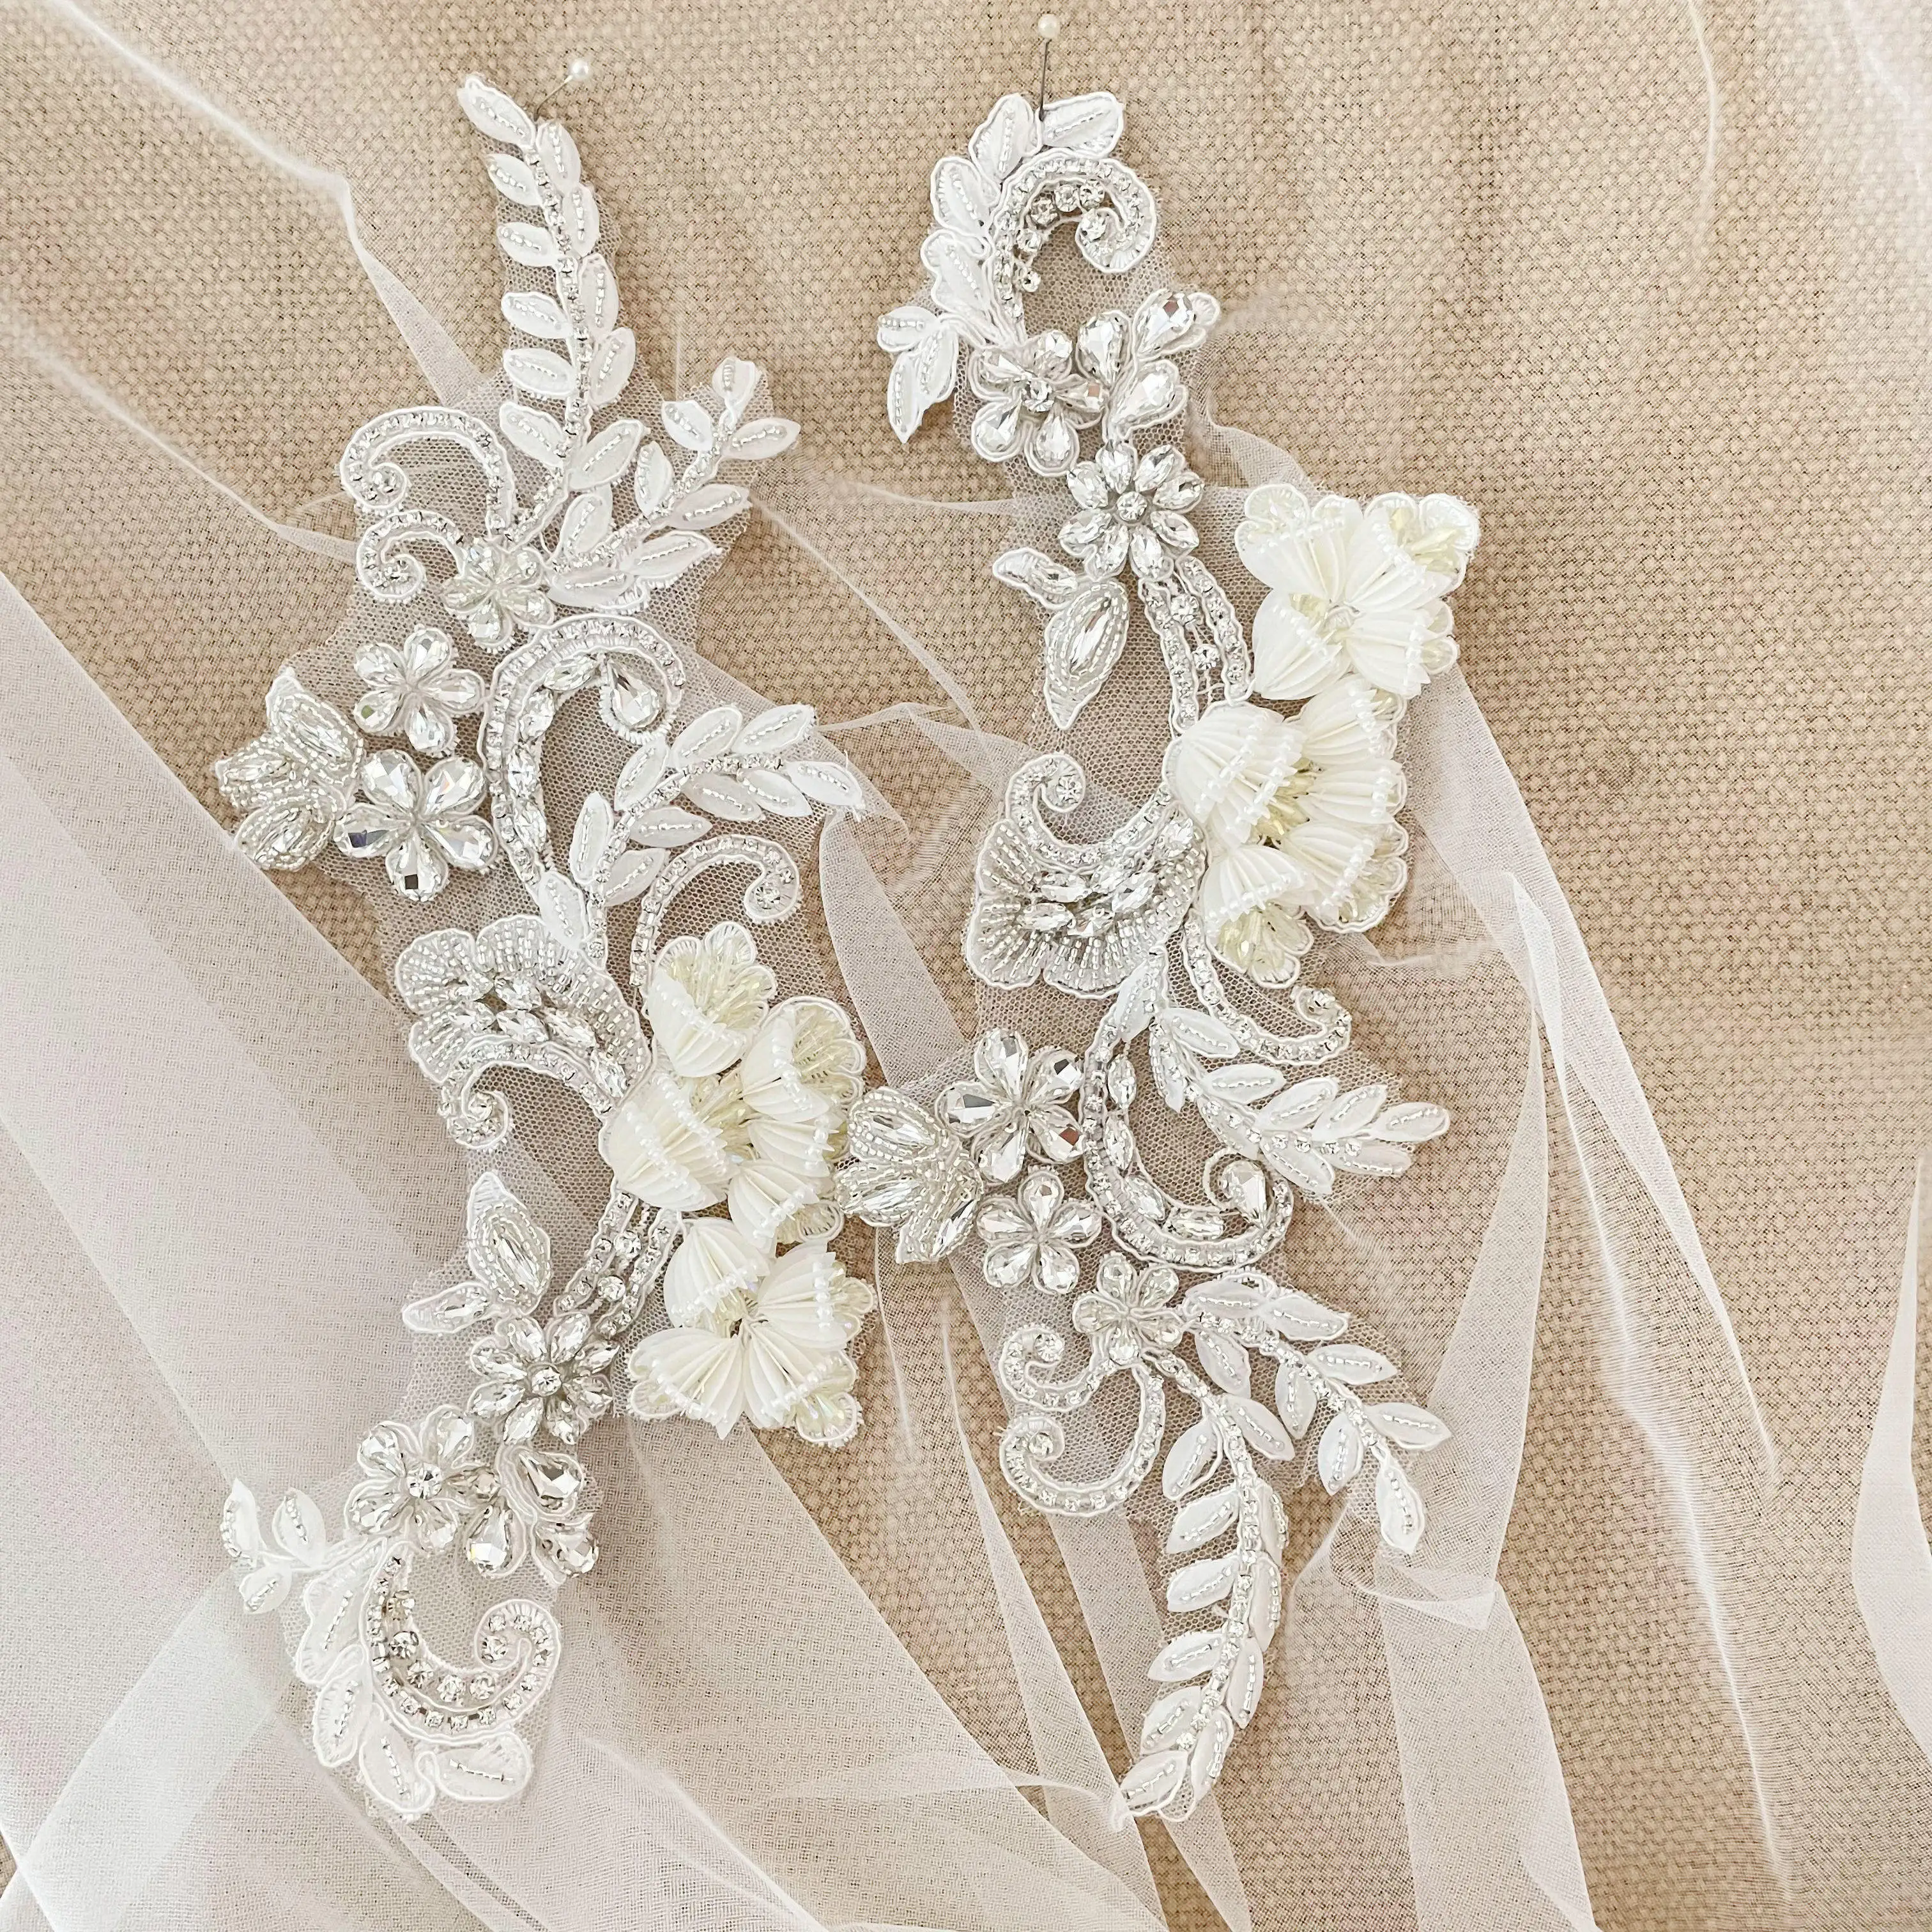 DELACE-accesorios para vestido de novia, apliques florales 3d, purpura, beige, brillante, linterna, flores